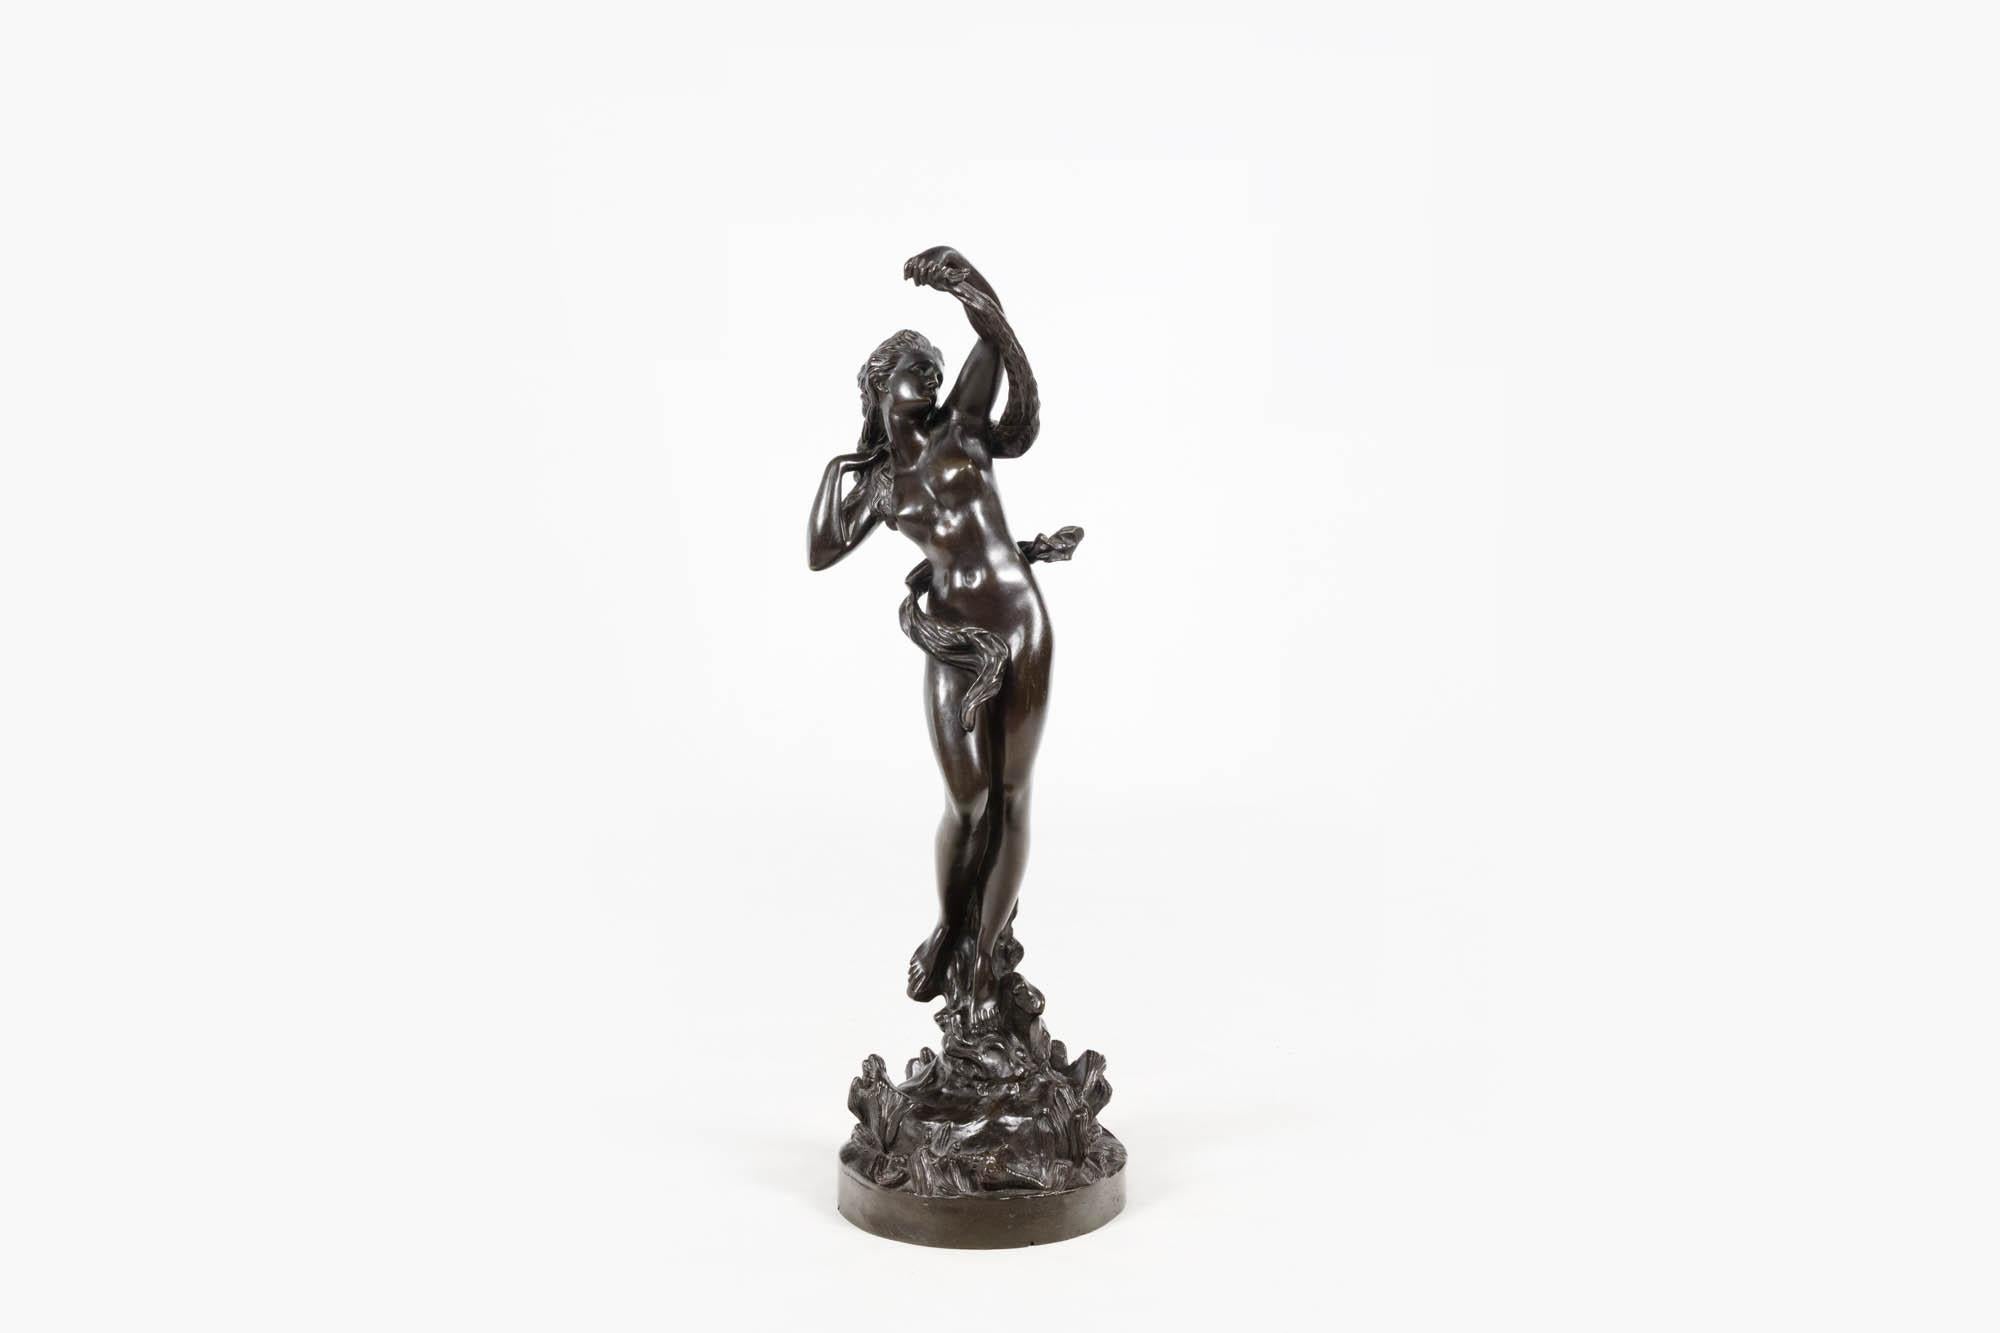 Sculpture en bronze patiné du XIXe siècle représentant une figure féminine dansante, peut-être une nymphe de la mer. La figure repose sur un socle de coquillages et de répouses faisant tournoyer un drapé autour de son corps. Il capture